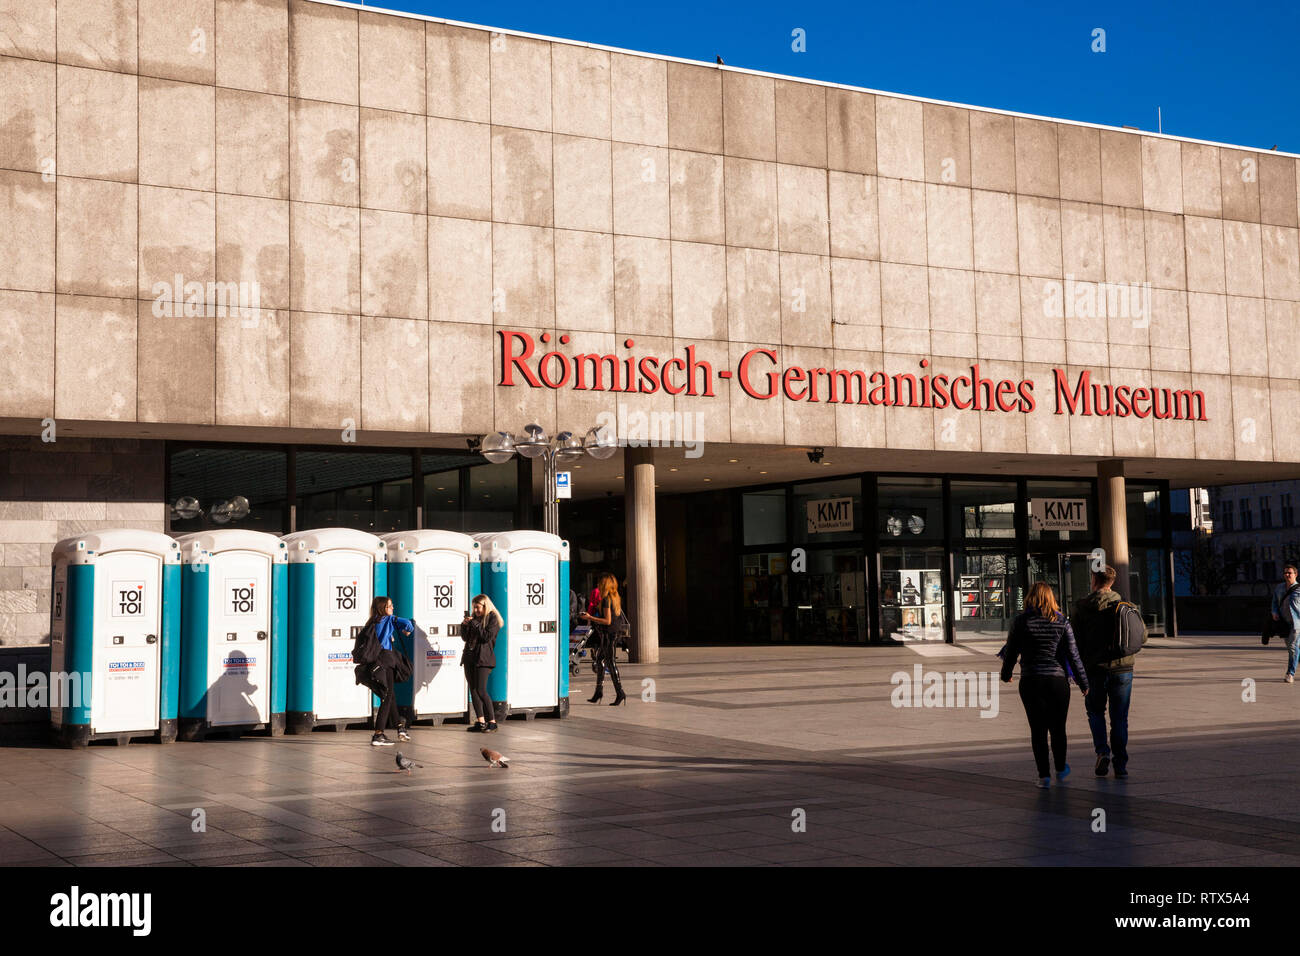 Les toilettes portatives en face de la musée romain-germanique à la place Roncalli, Cologne, Allemagne. Dixi Toiletten vor dem Roemisch-Germanischen Museum Banque D'Images